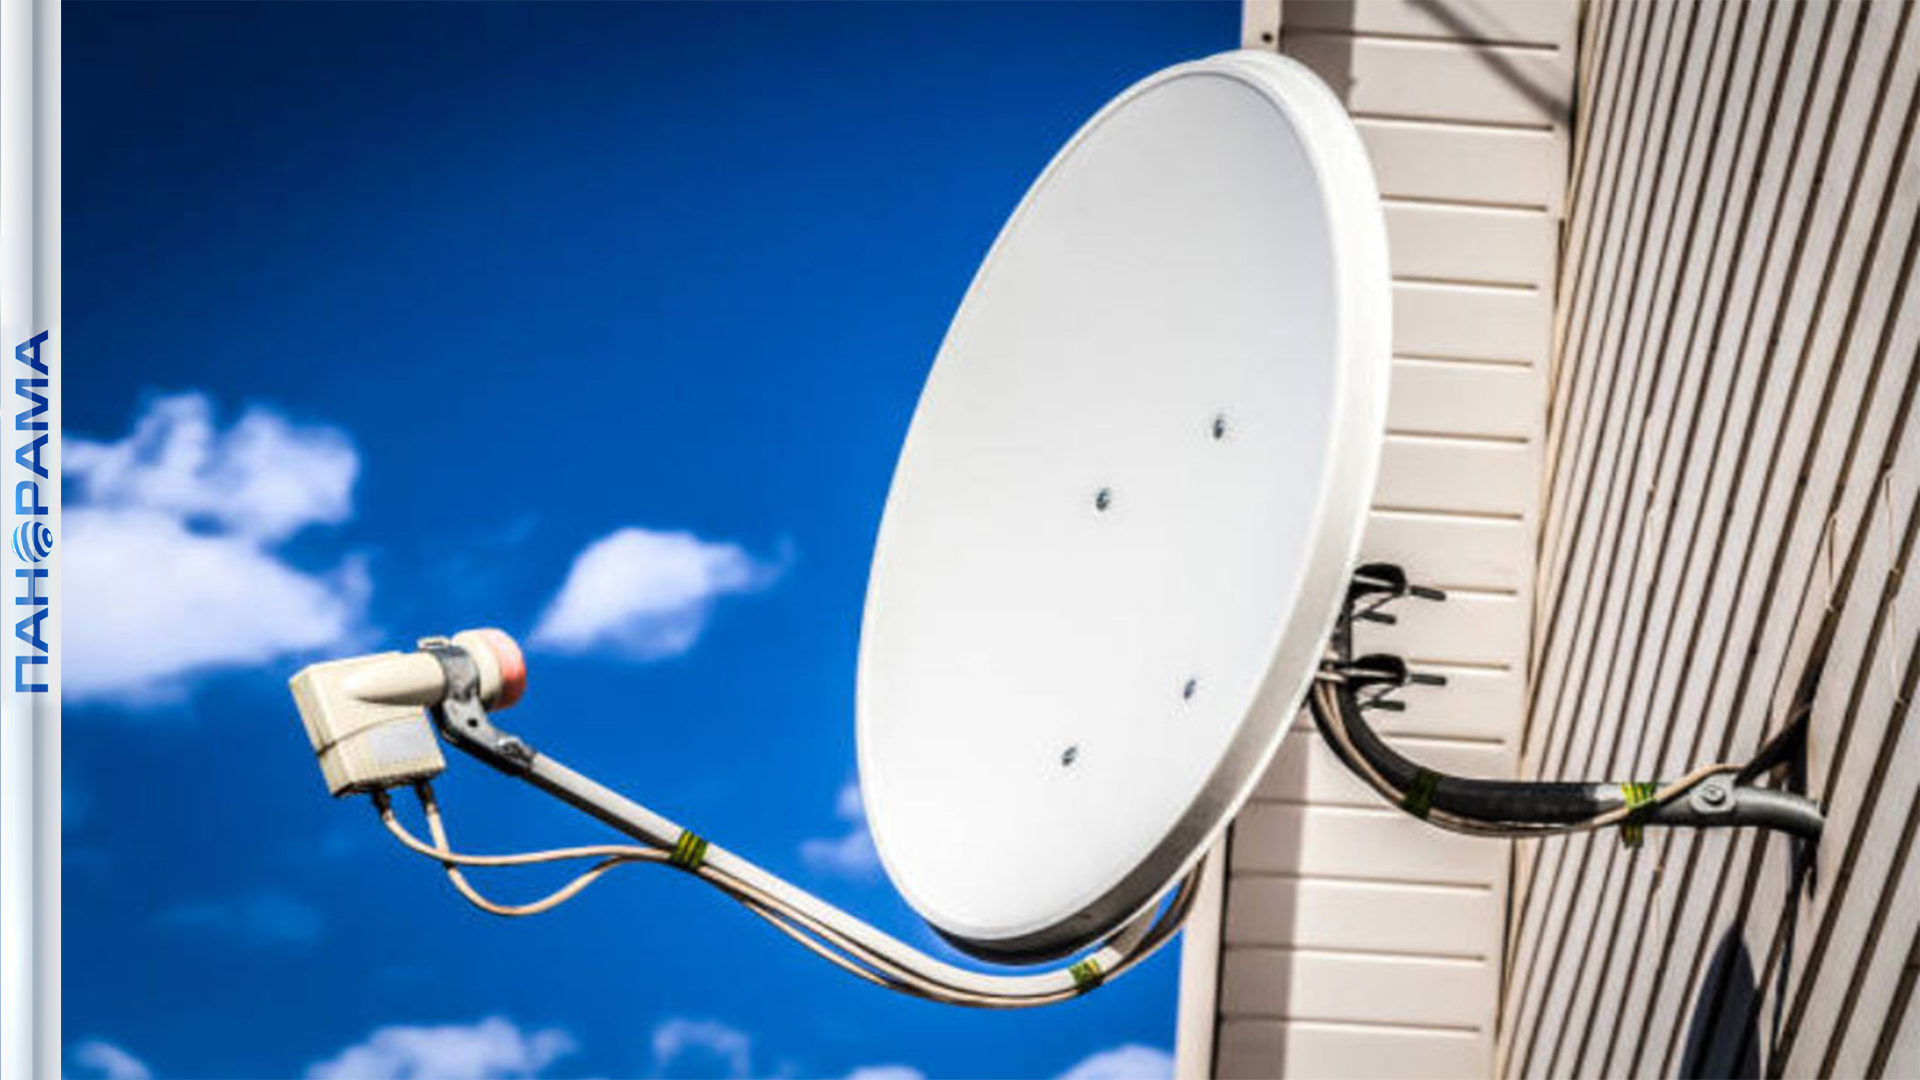 ⚡️ Новая спутниковая тарелка — бесплатно: в ДНР устанавливают новое телевещательное оборудование с р